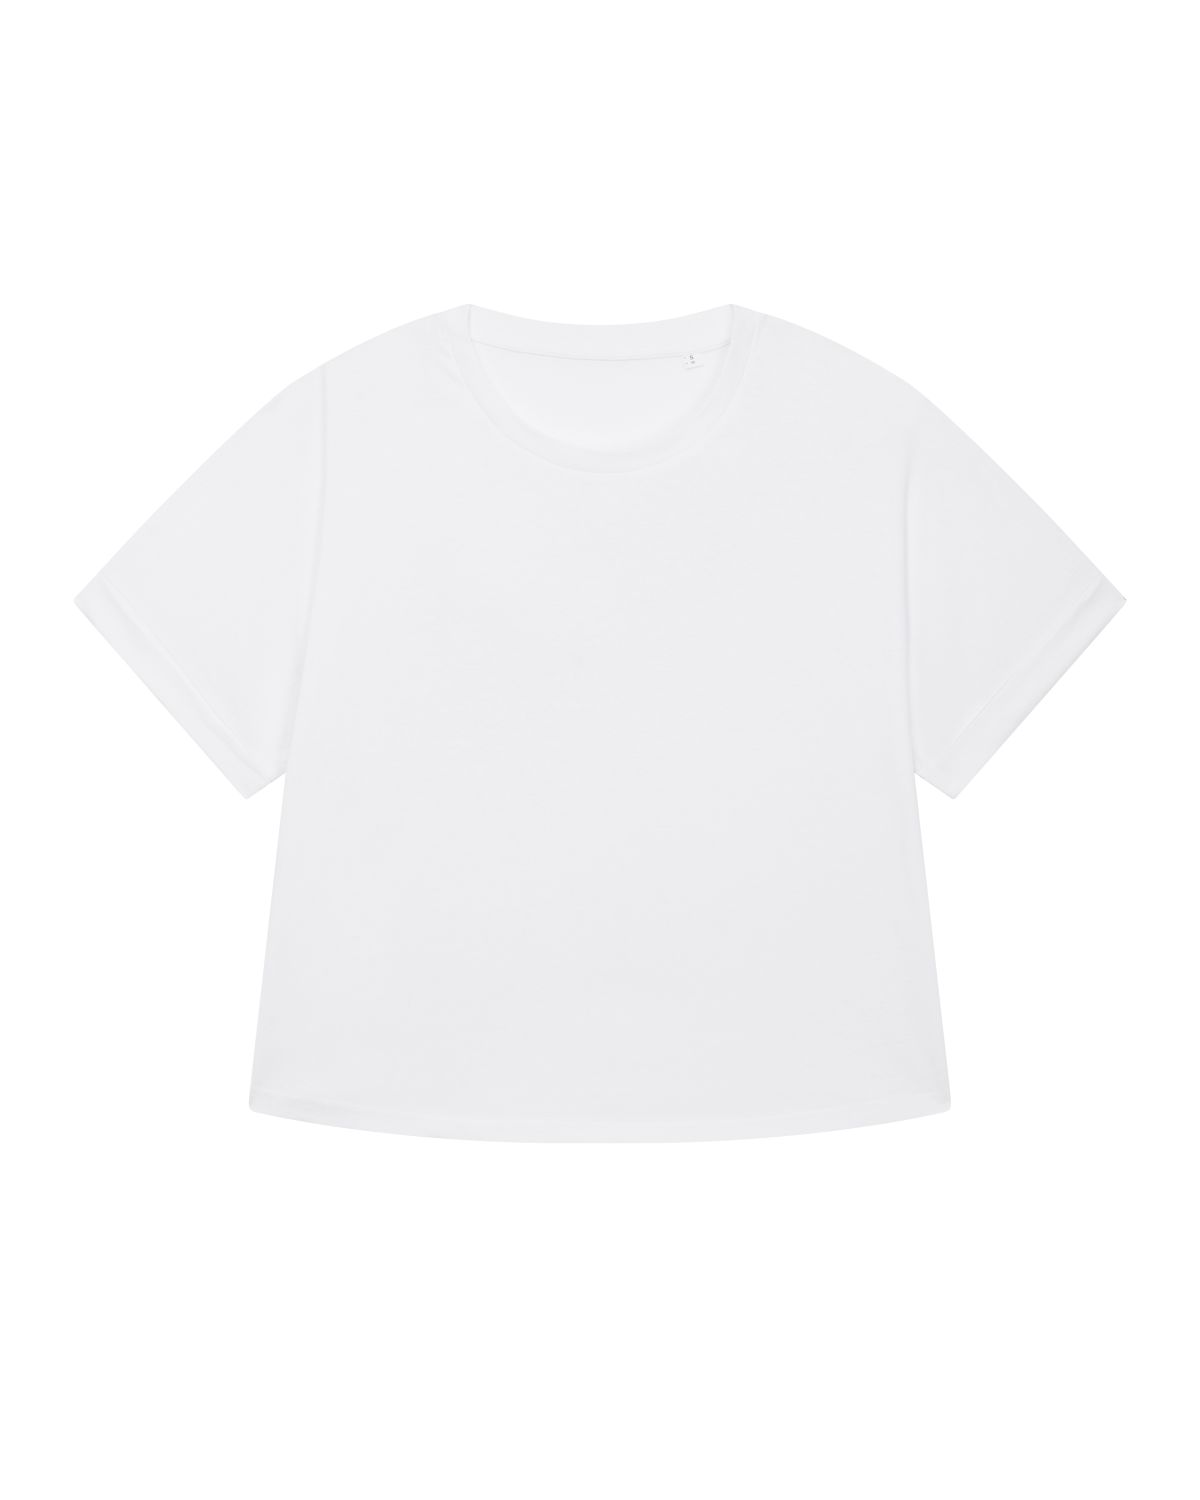 COLLIDER - T-Shirt - 155g